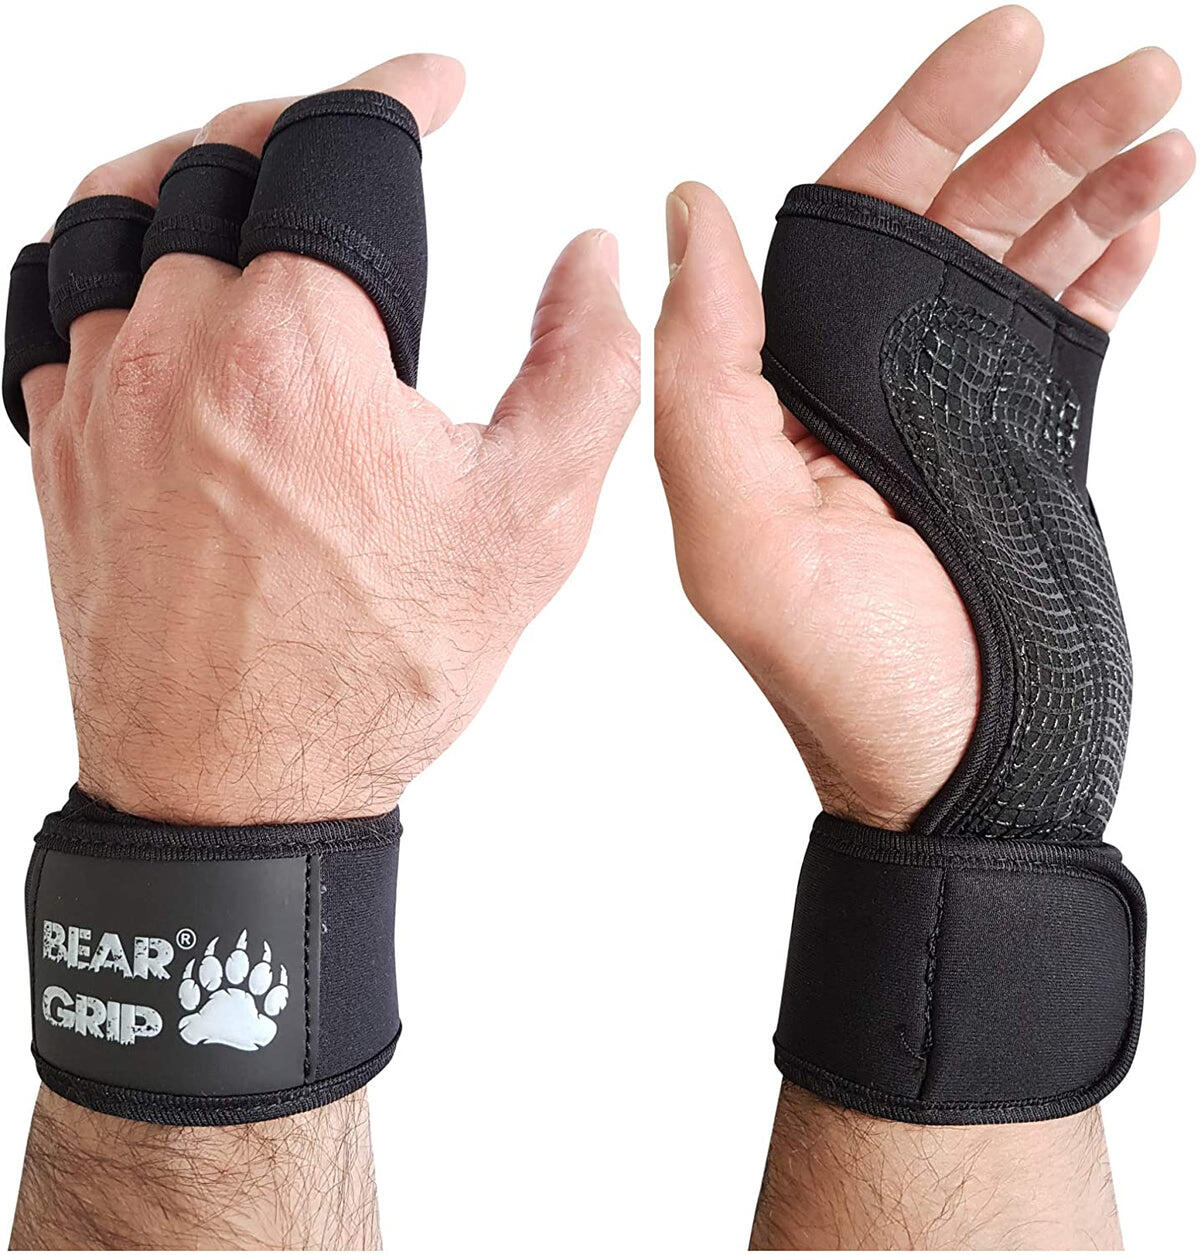 BEAR GRIP BEAR GRIP - Open Workout Gloves for Weight Lifting